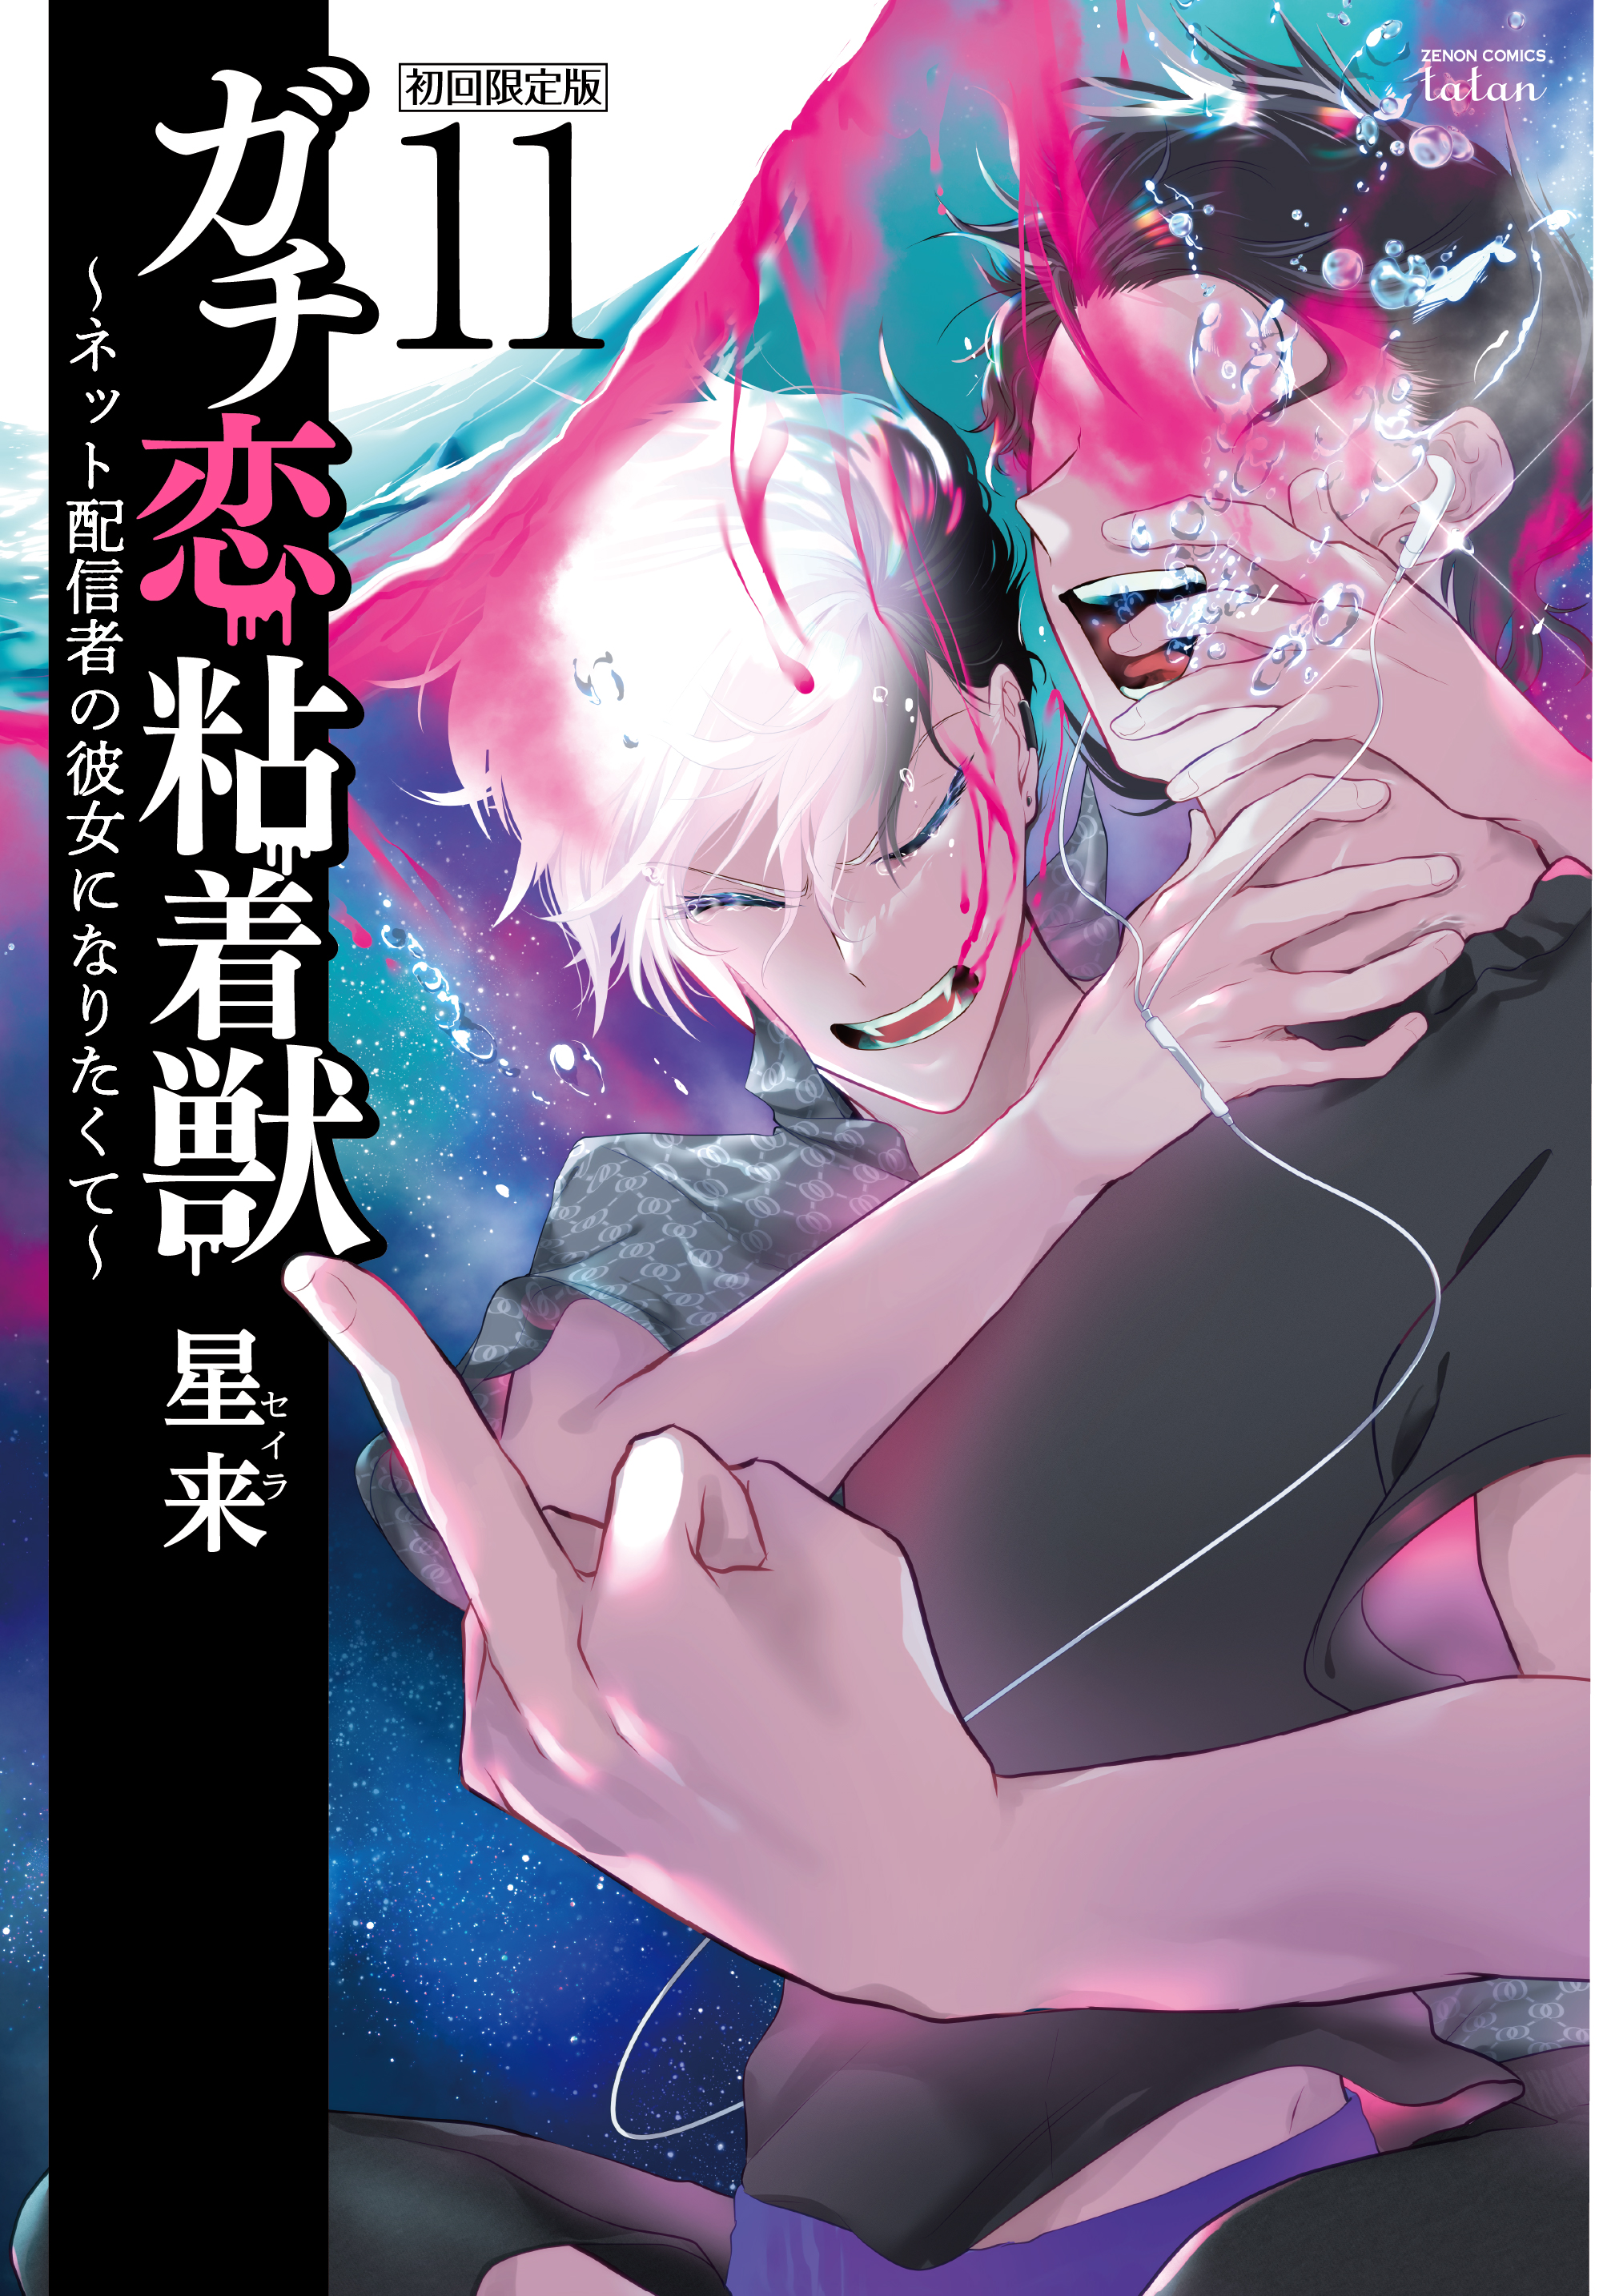 COSMICアカウント停止”『ガチ恋粘着獣』第11巻 初回限定版・通常版